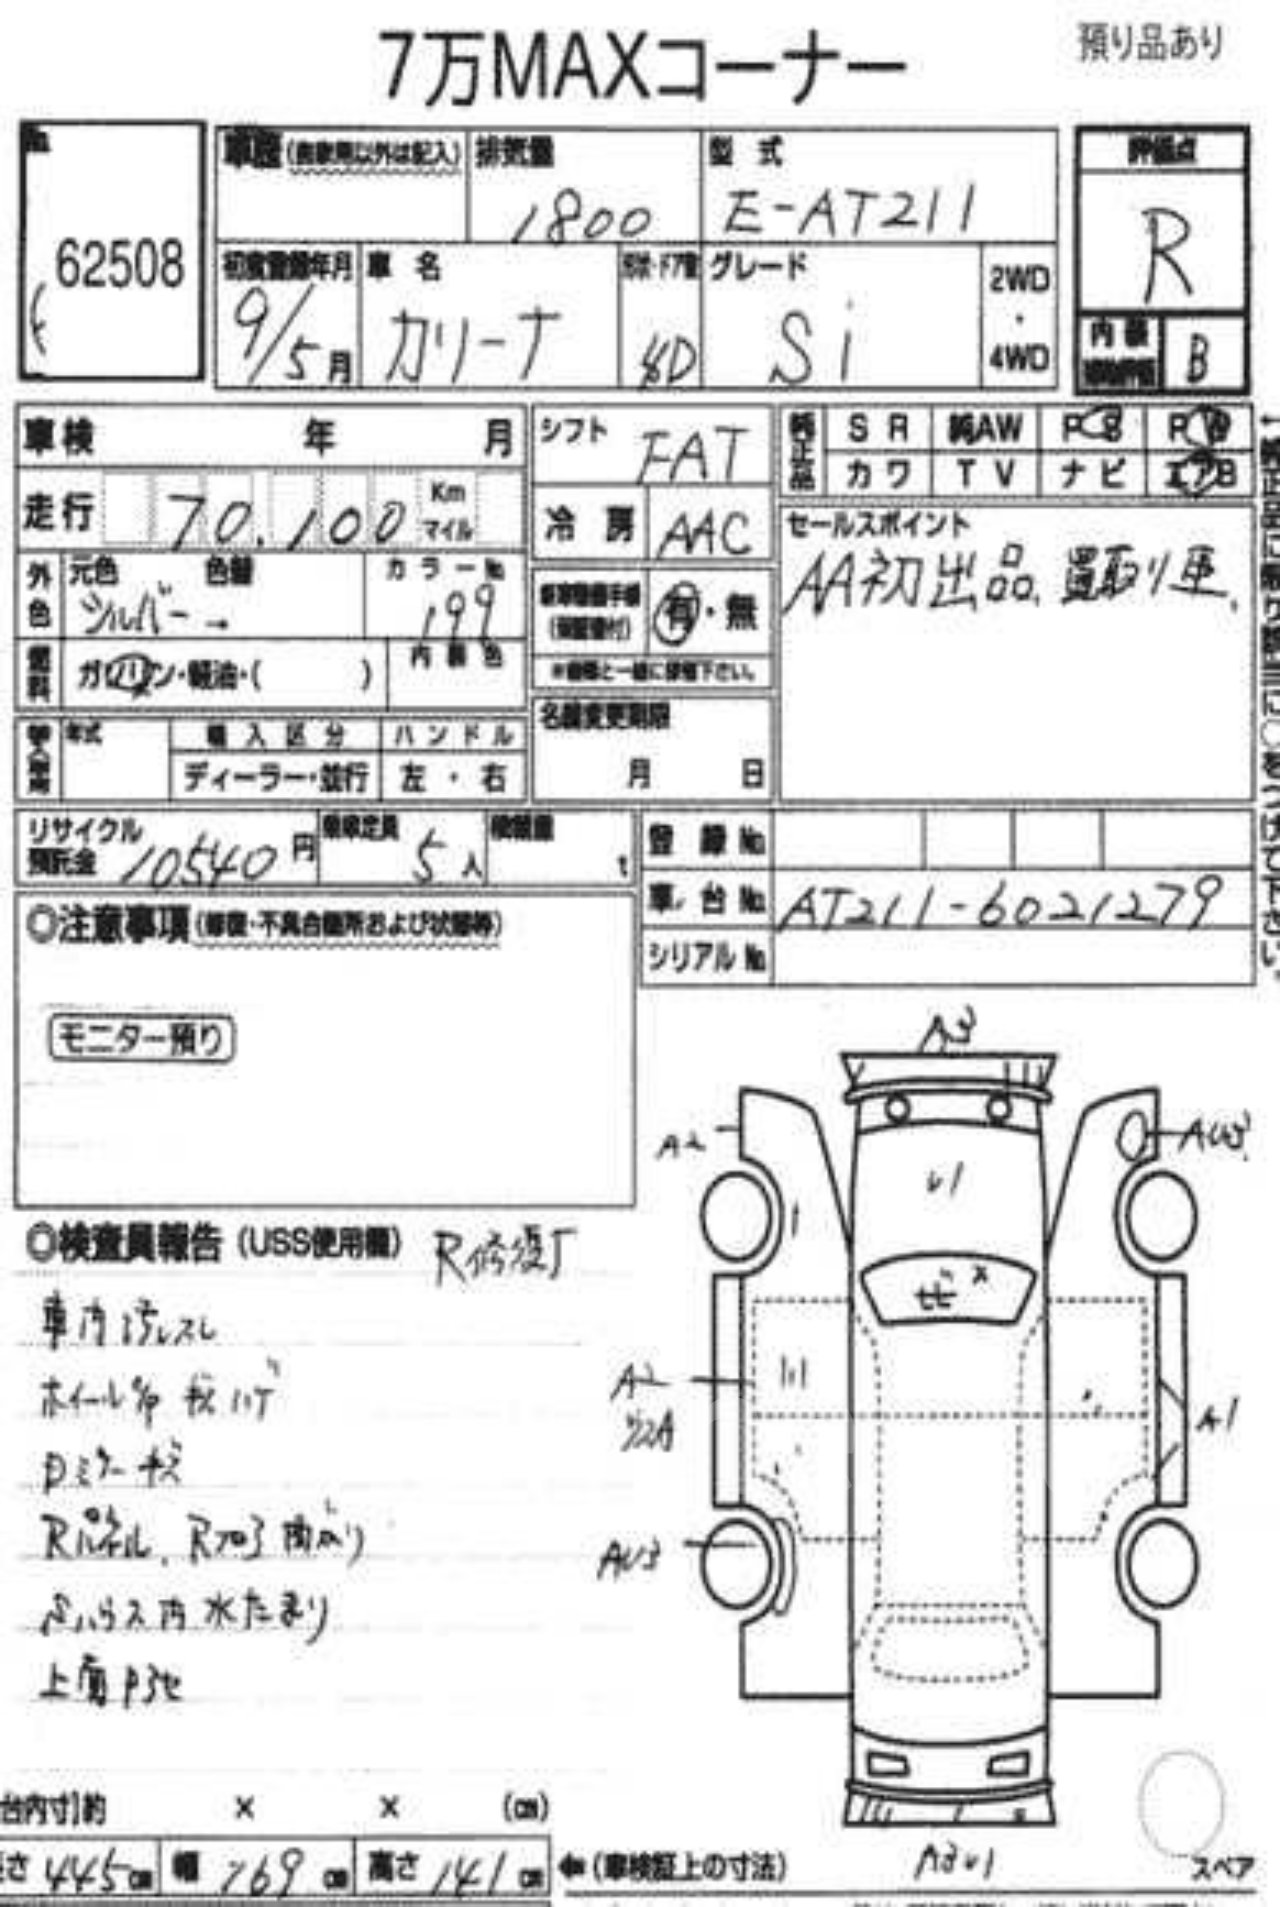 аукционный лист япония расшифровка по